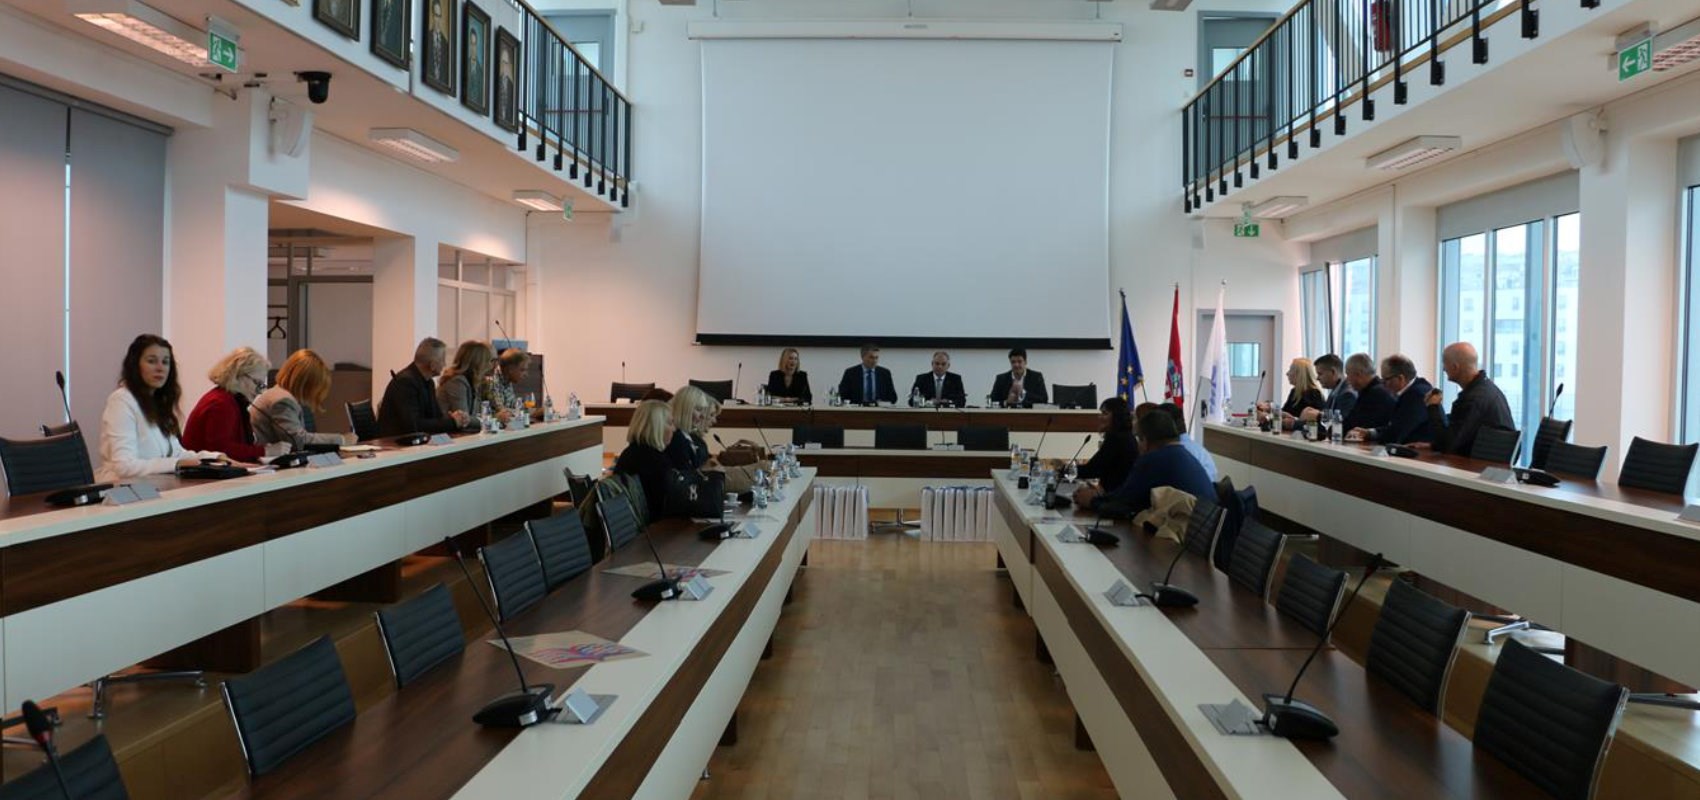 U povodu nadolazeće Smotre Sveučilišta u Splitu održan sastanak s ravnateljima srednjih škola Splitsko-dalmatinske županije